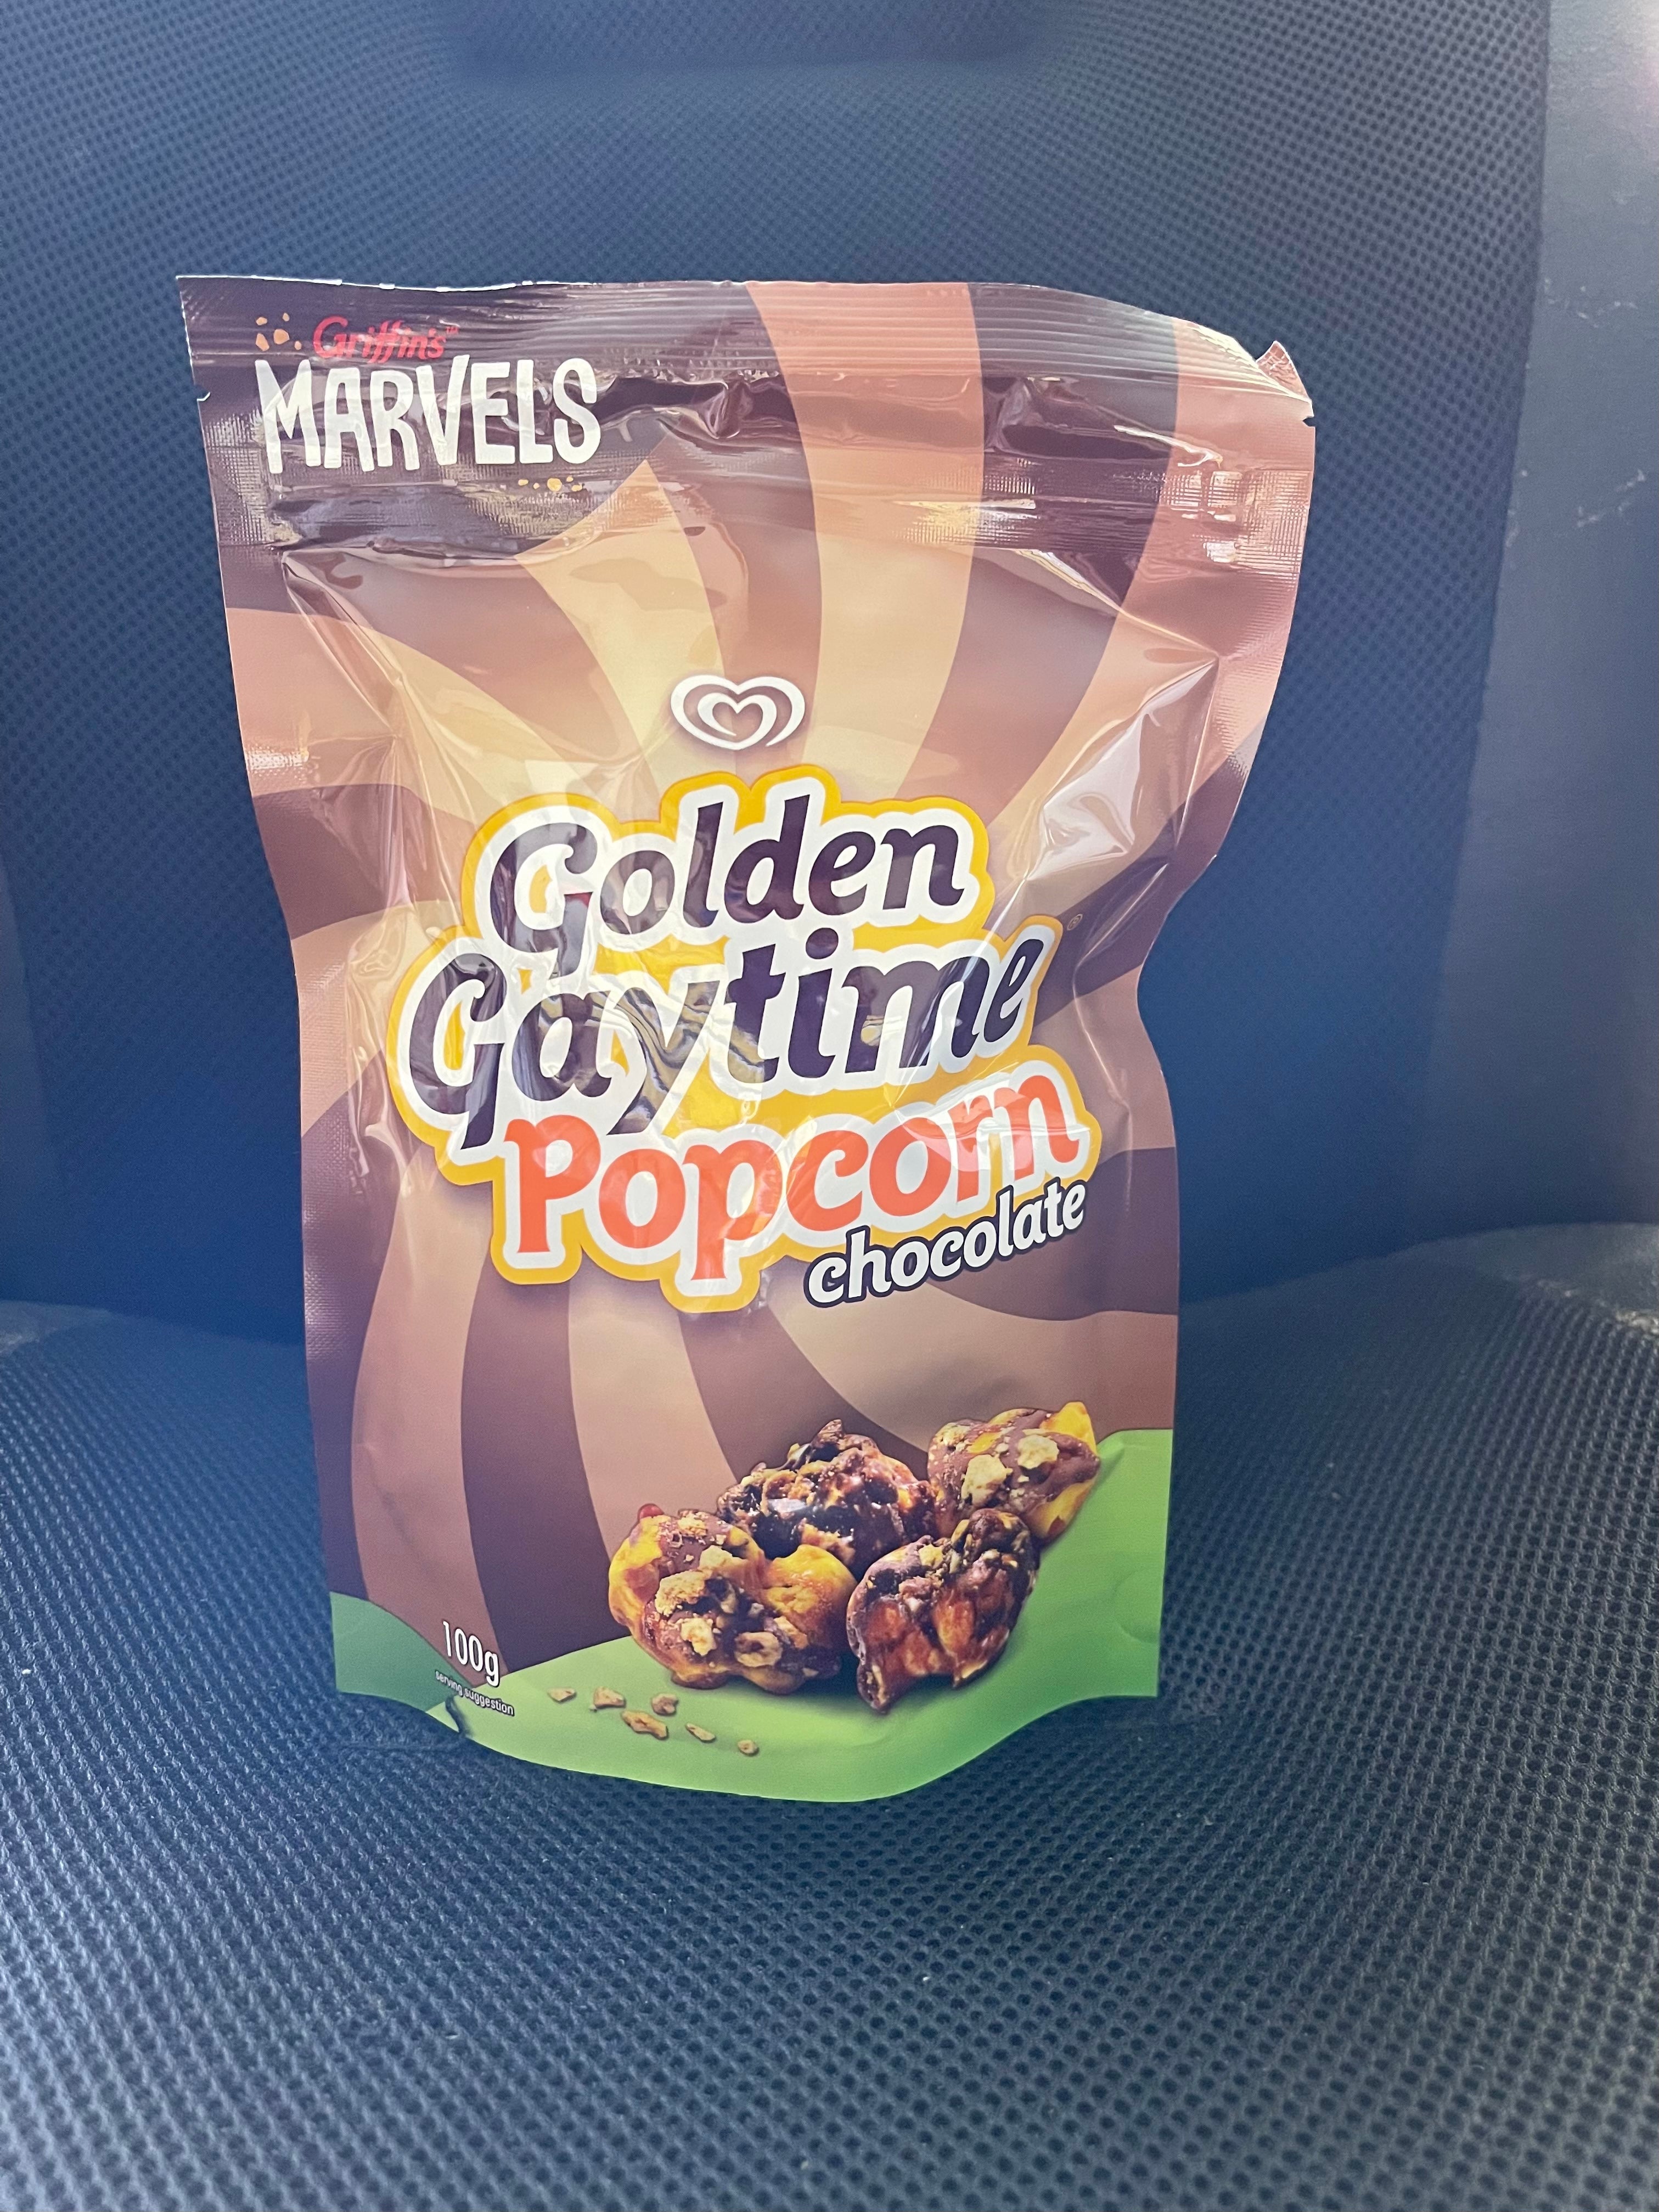 Marvels Golden Gaytime Popcorn Choc